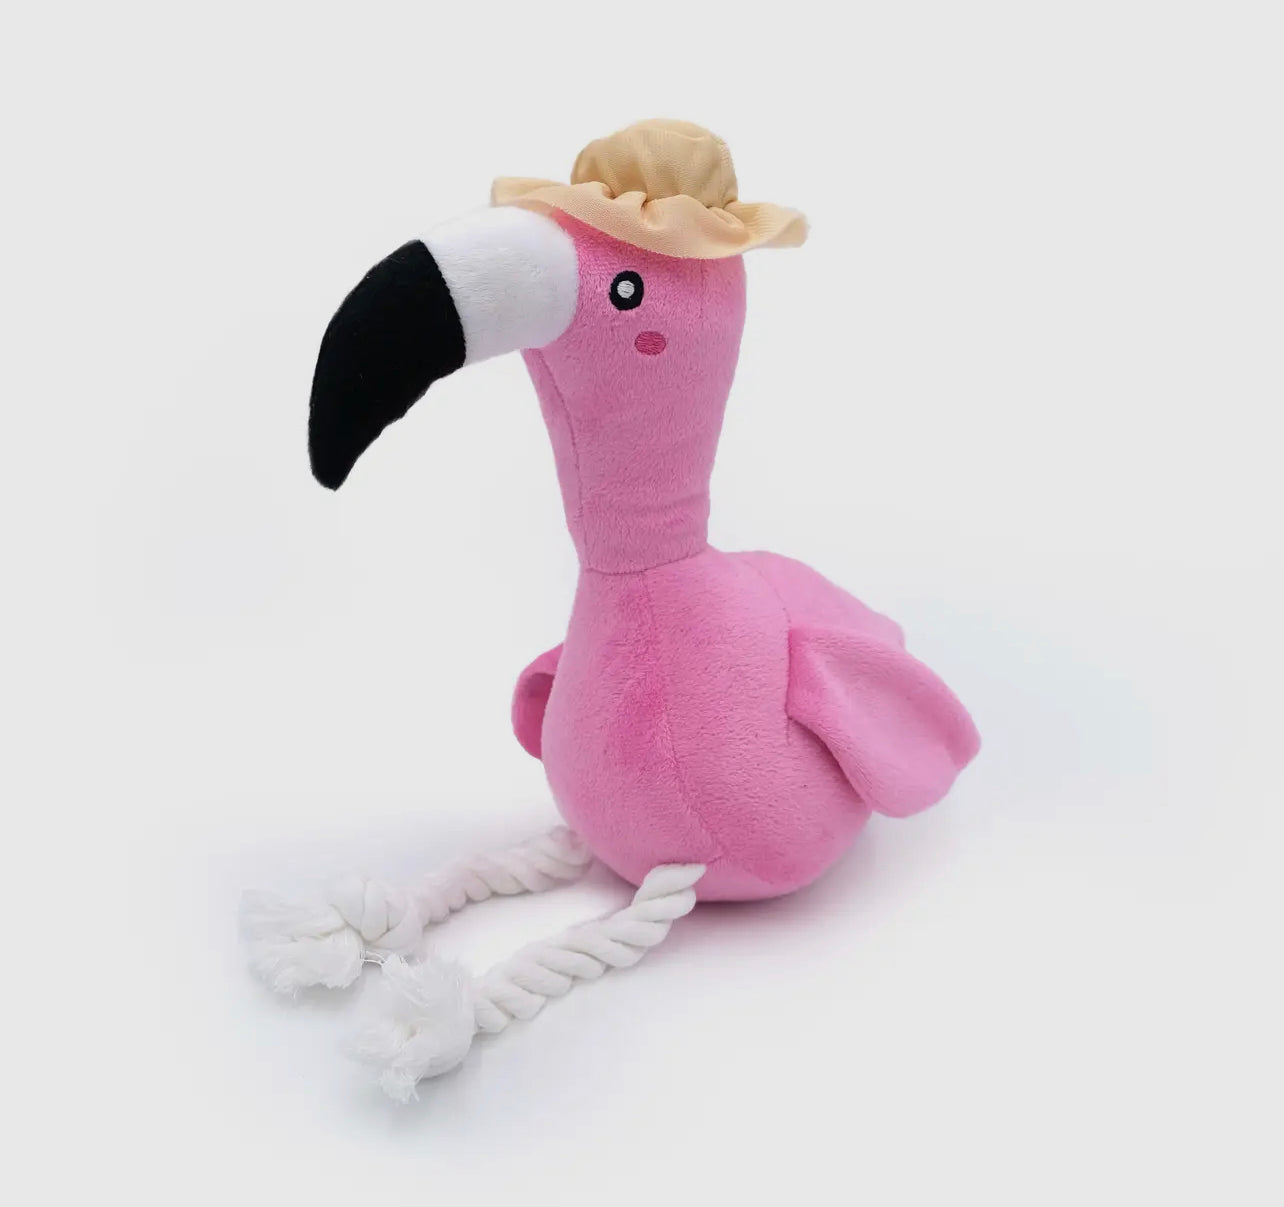 Freya the Flamingo